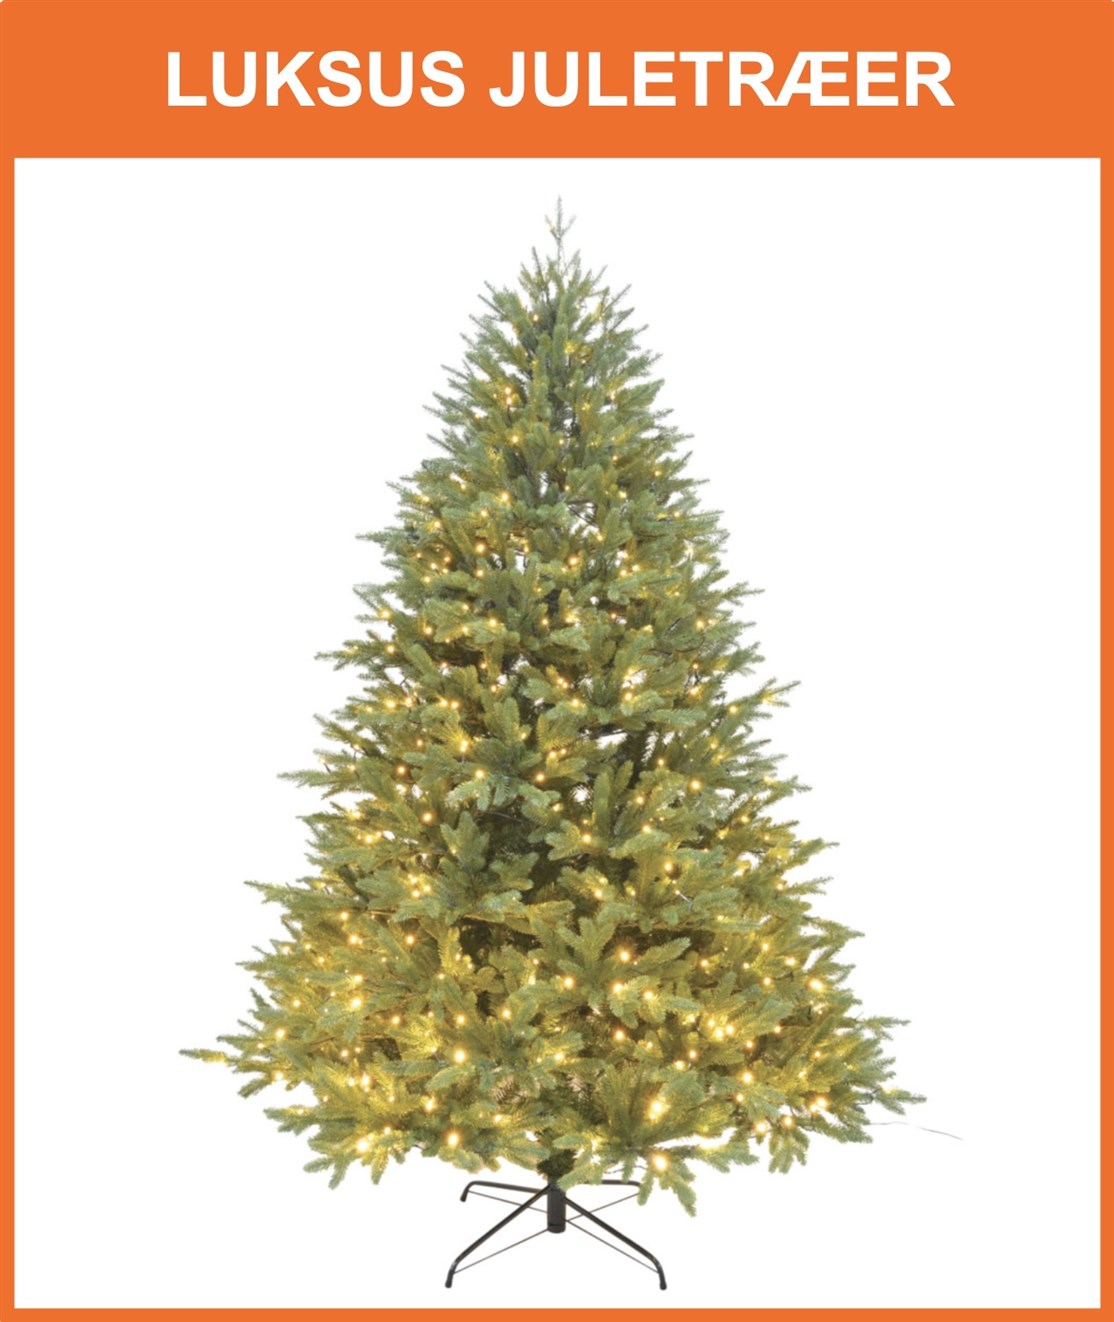 Stort udvalg af flotte og fyldige luksus juletræer
*